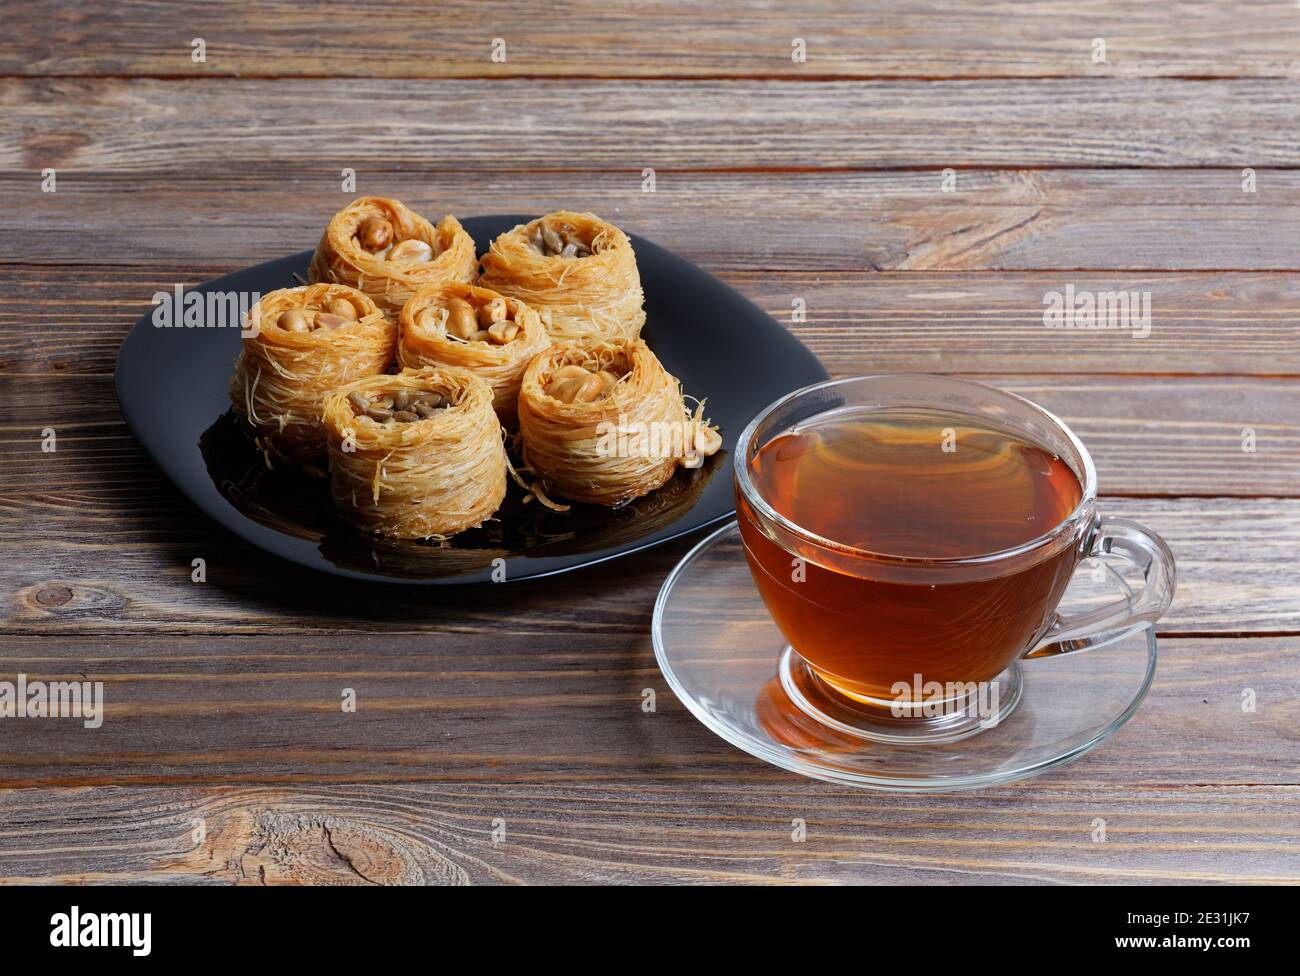 Tasse Tee und östliche Süßigkeiten - Baklava auf Holz Tabelle Stockfoto